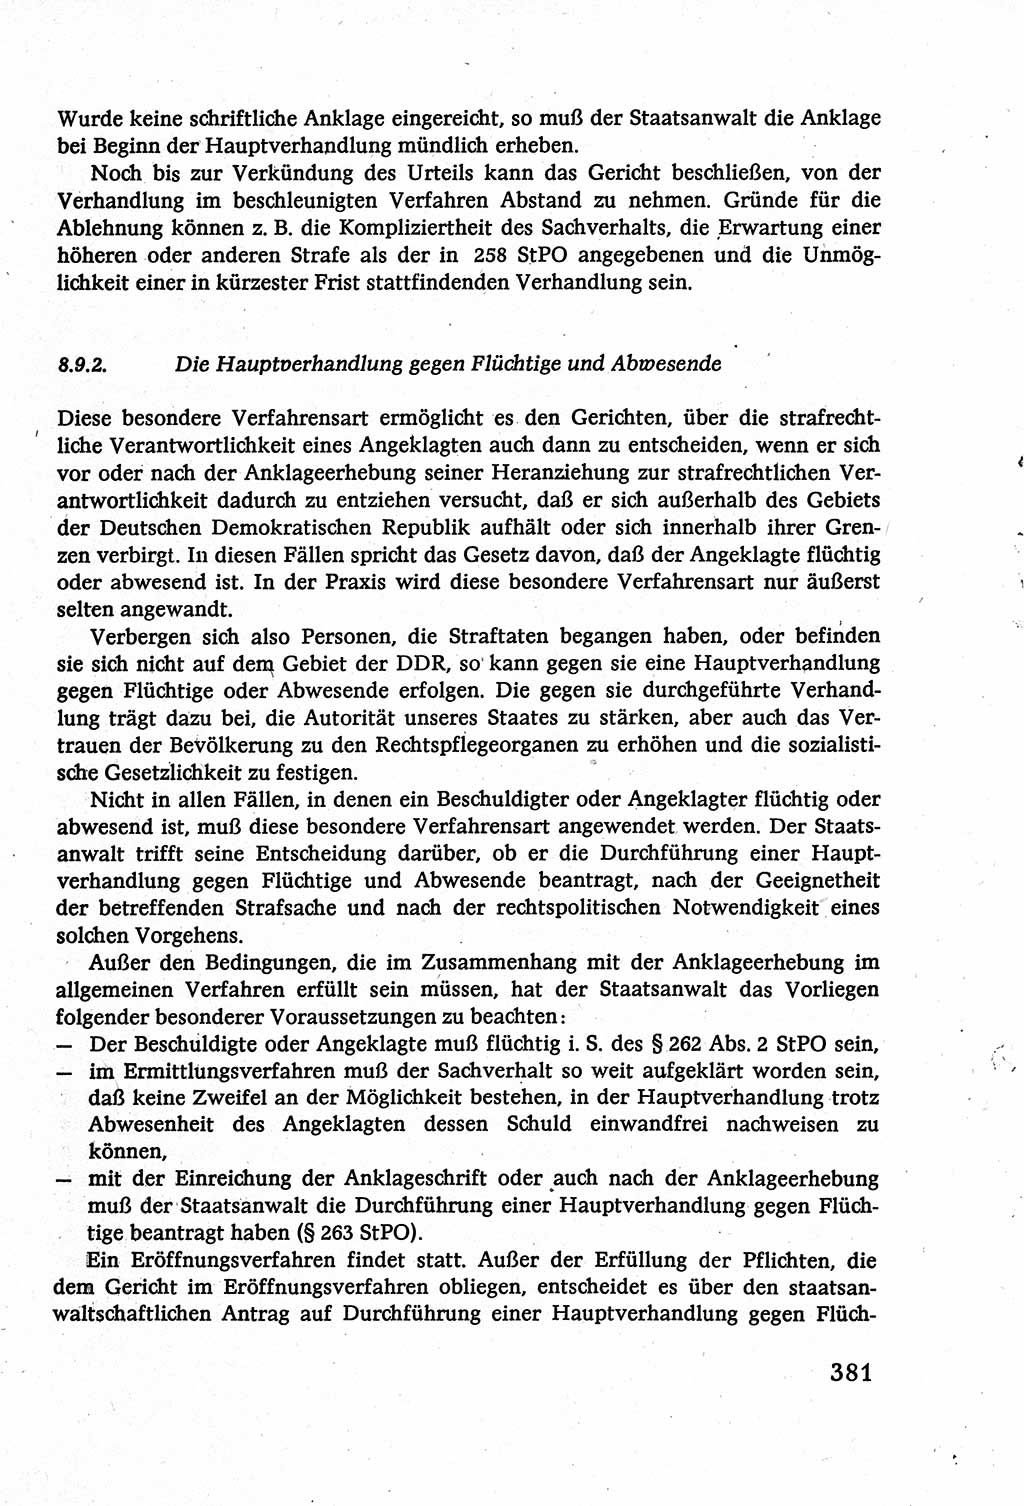 Strafverfahrensrecht [Deutsche Demokratische Republik (DDR)], Lehrbuch 1977, Seite 381 (Strafverf.-R. DDR Lb. 1977, S. 381)